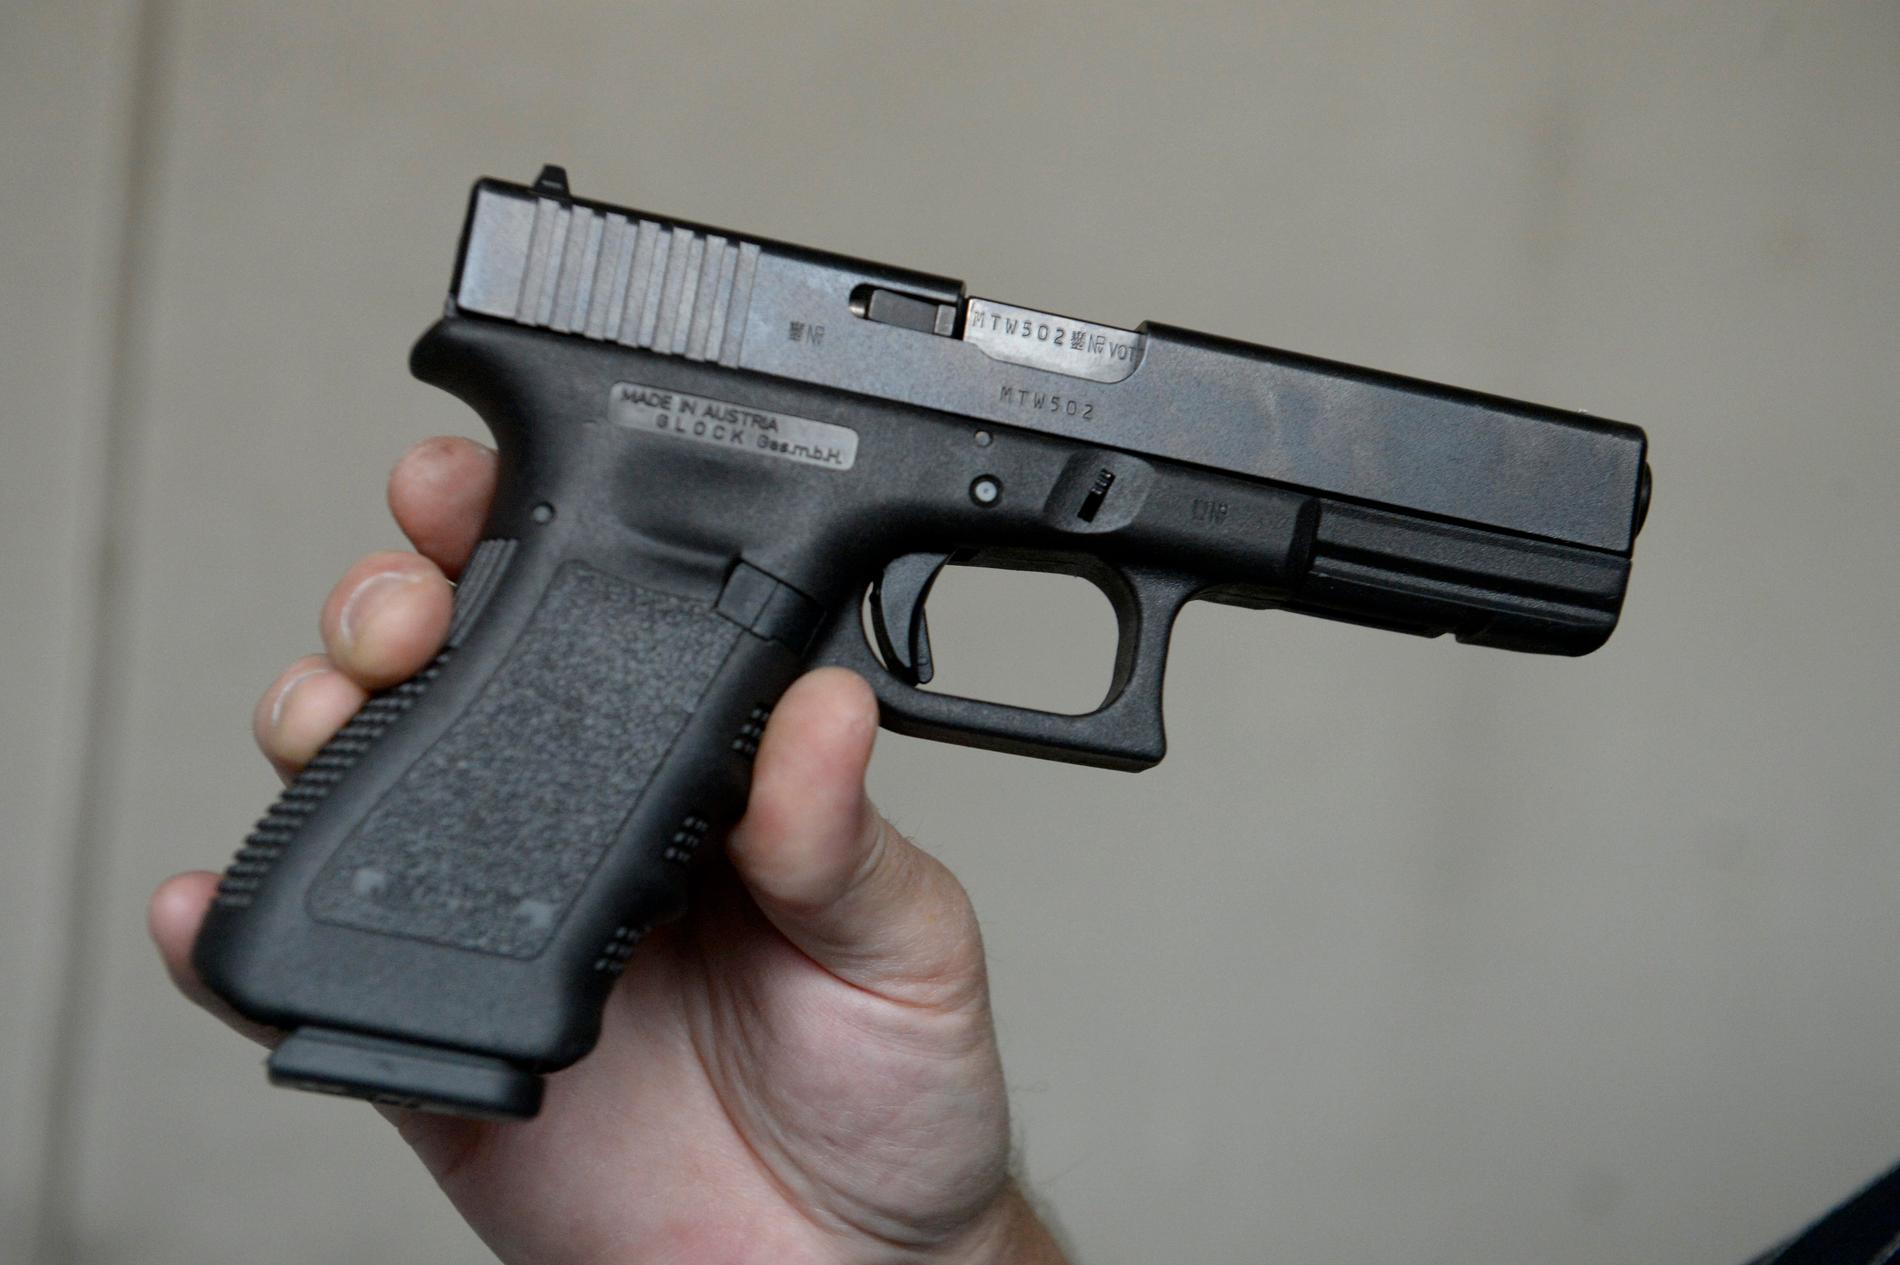 Sex stycken pistoler av modell Glock 17 ska enligt uppgift blivit stulna från ett låst skåp i Rosenbad.